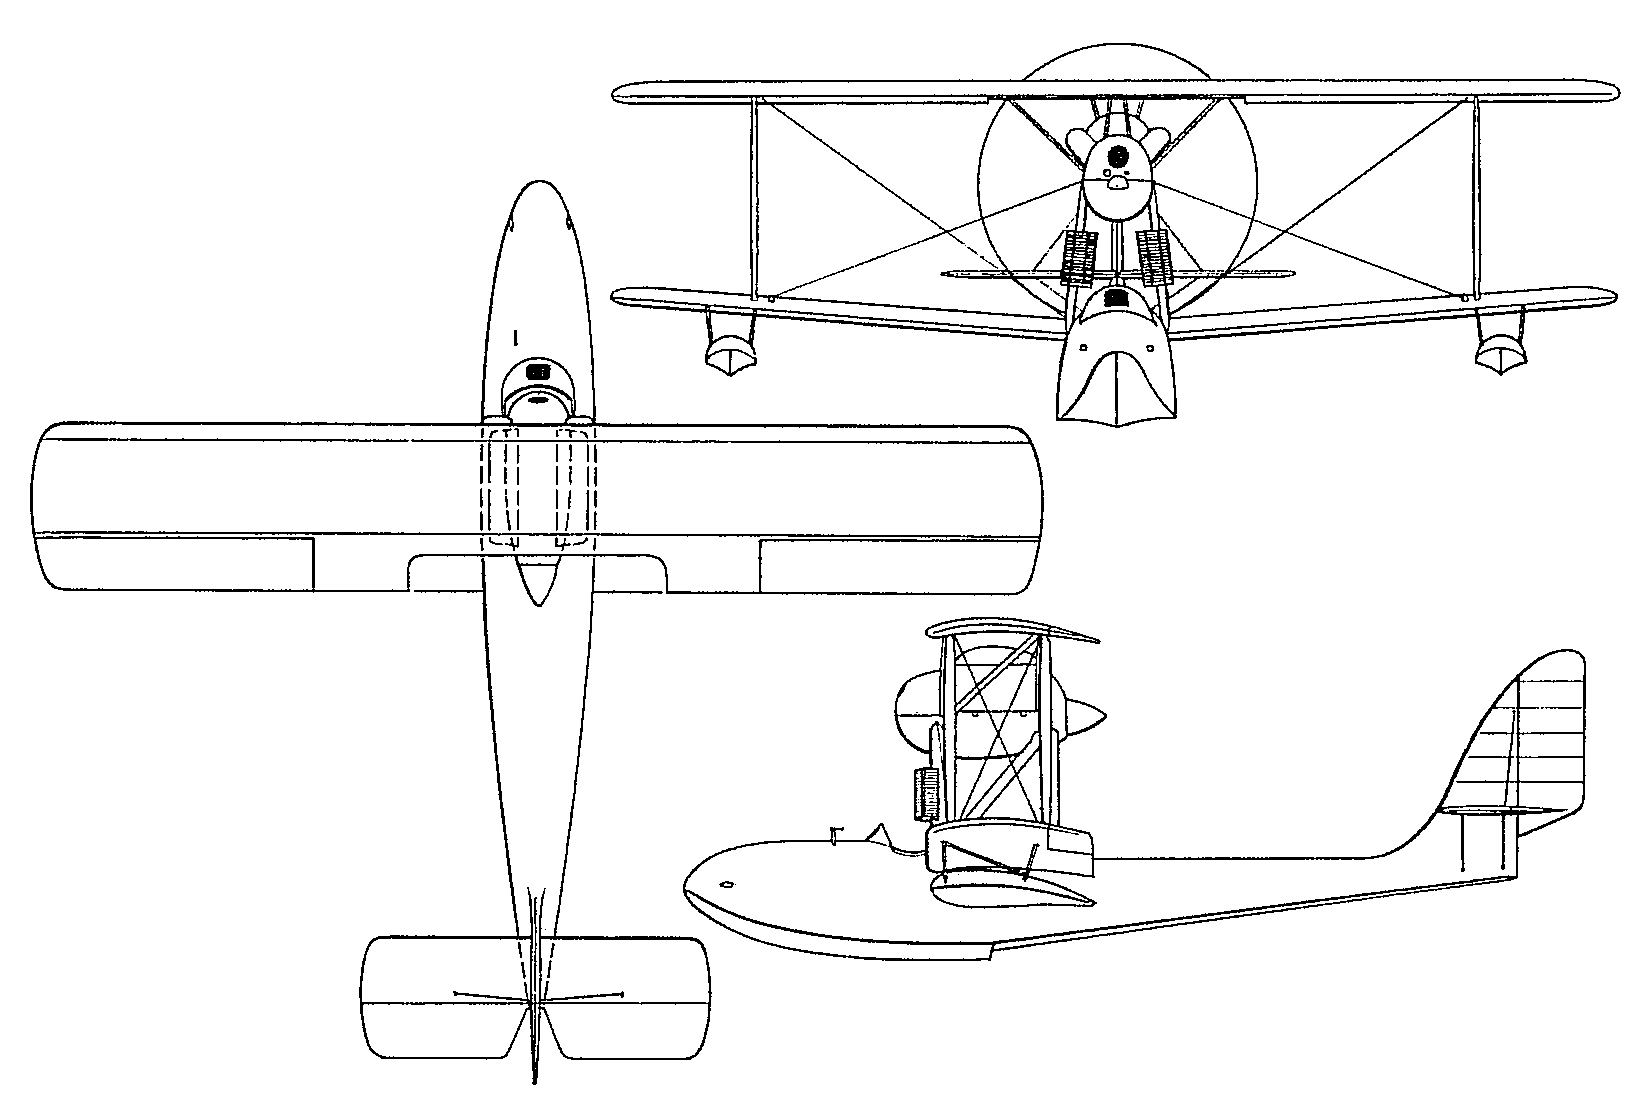 Macchi M.26 - fighter